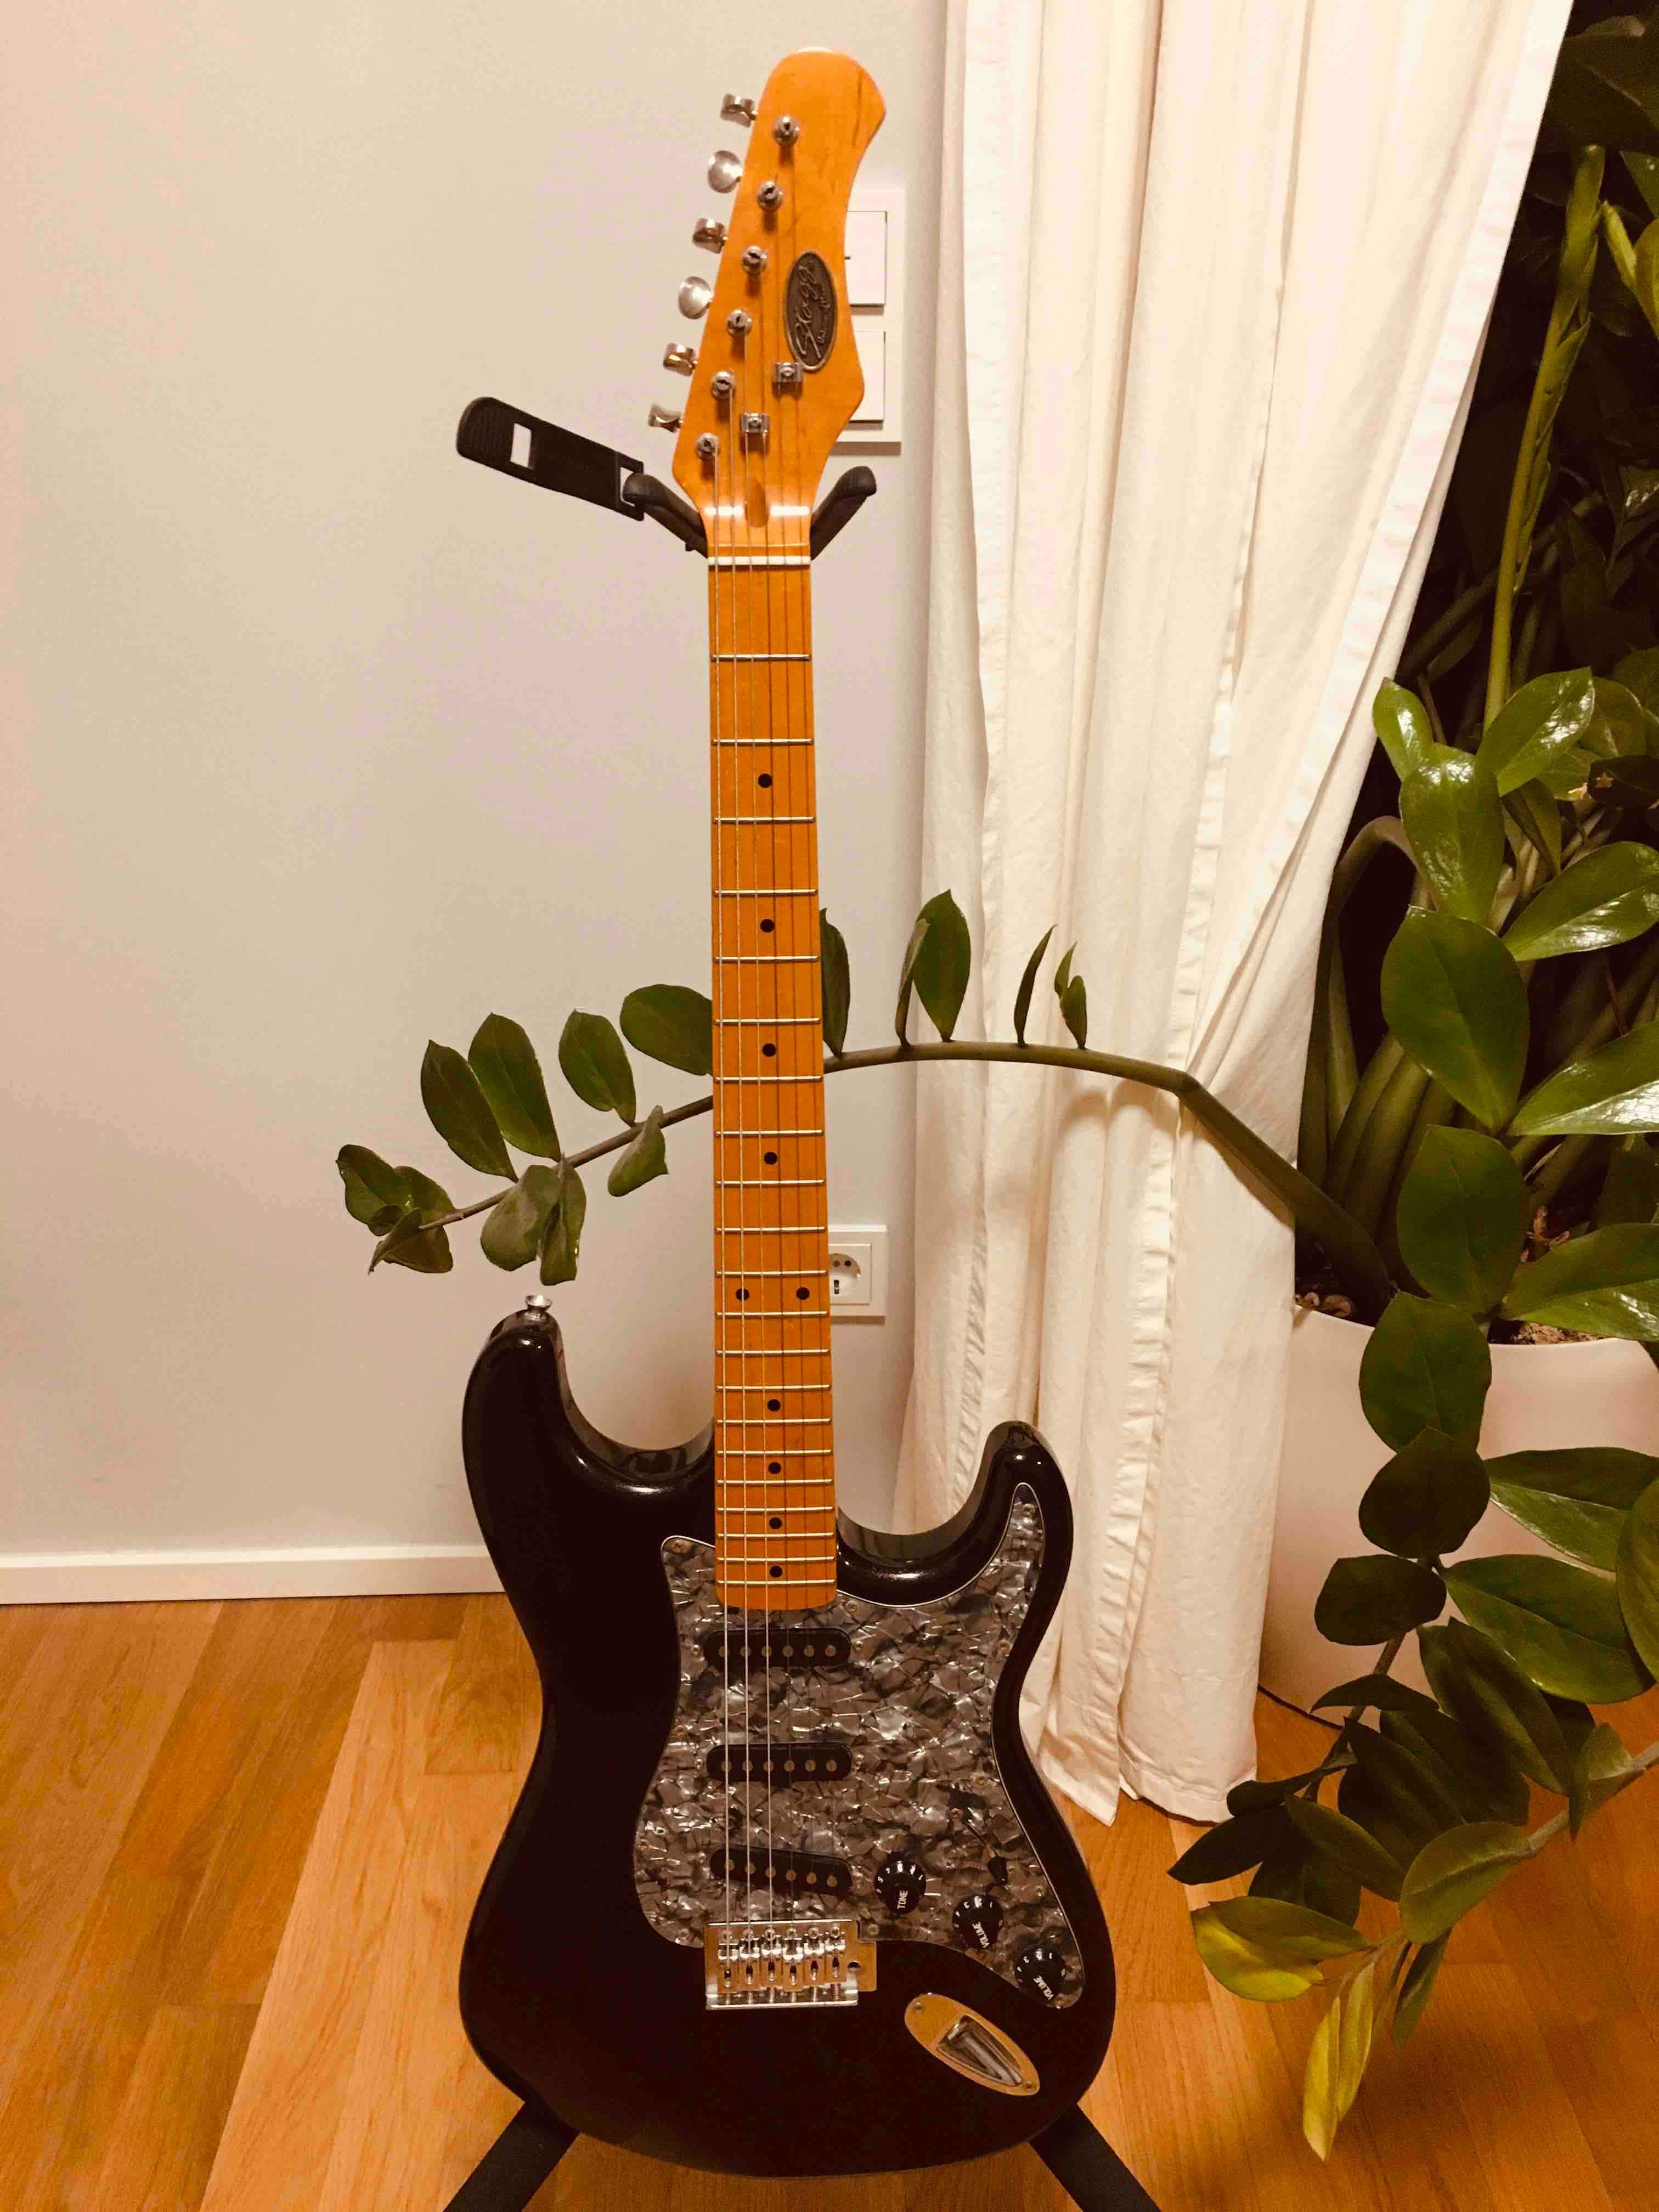 Эл/гитара Stratocaster Stagg S300 Китай 2000 г, в отличном состоянии